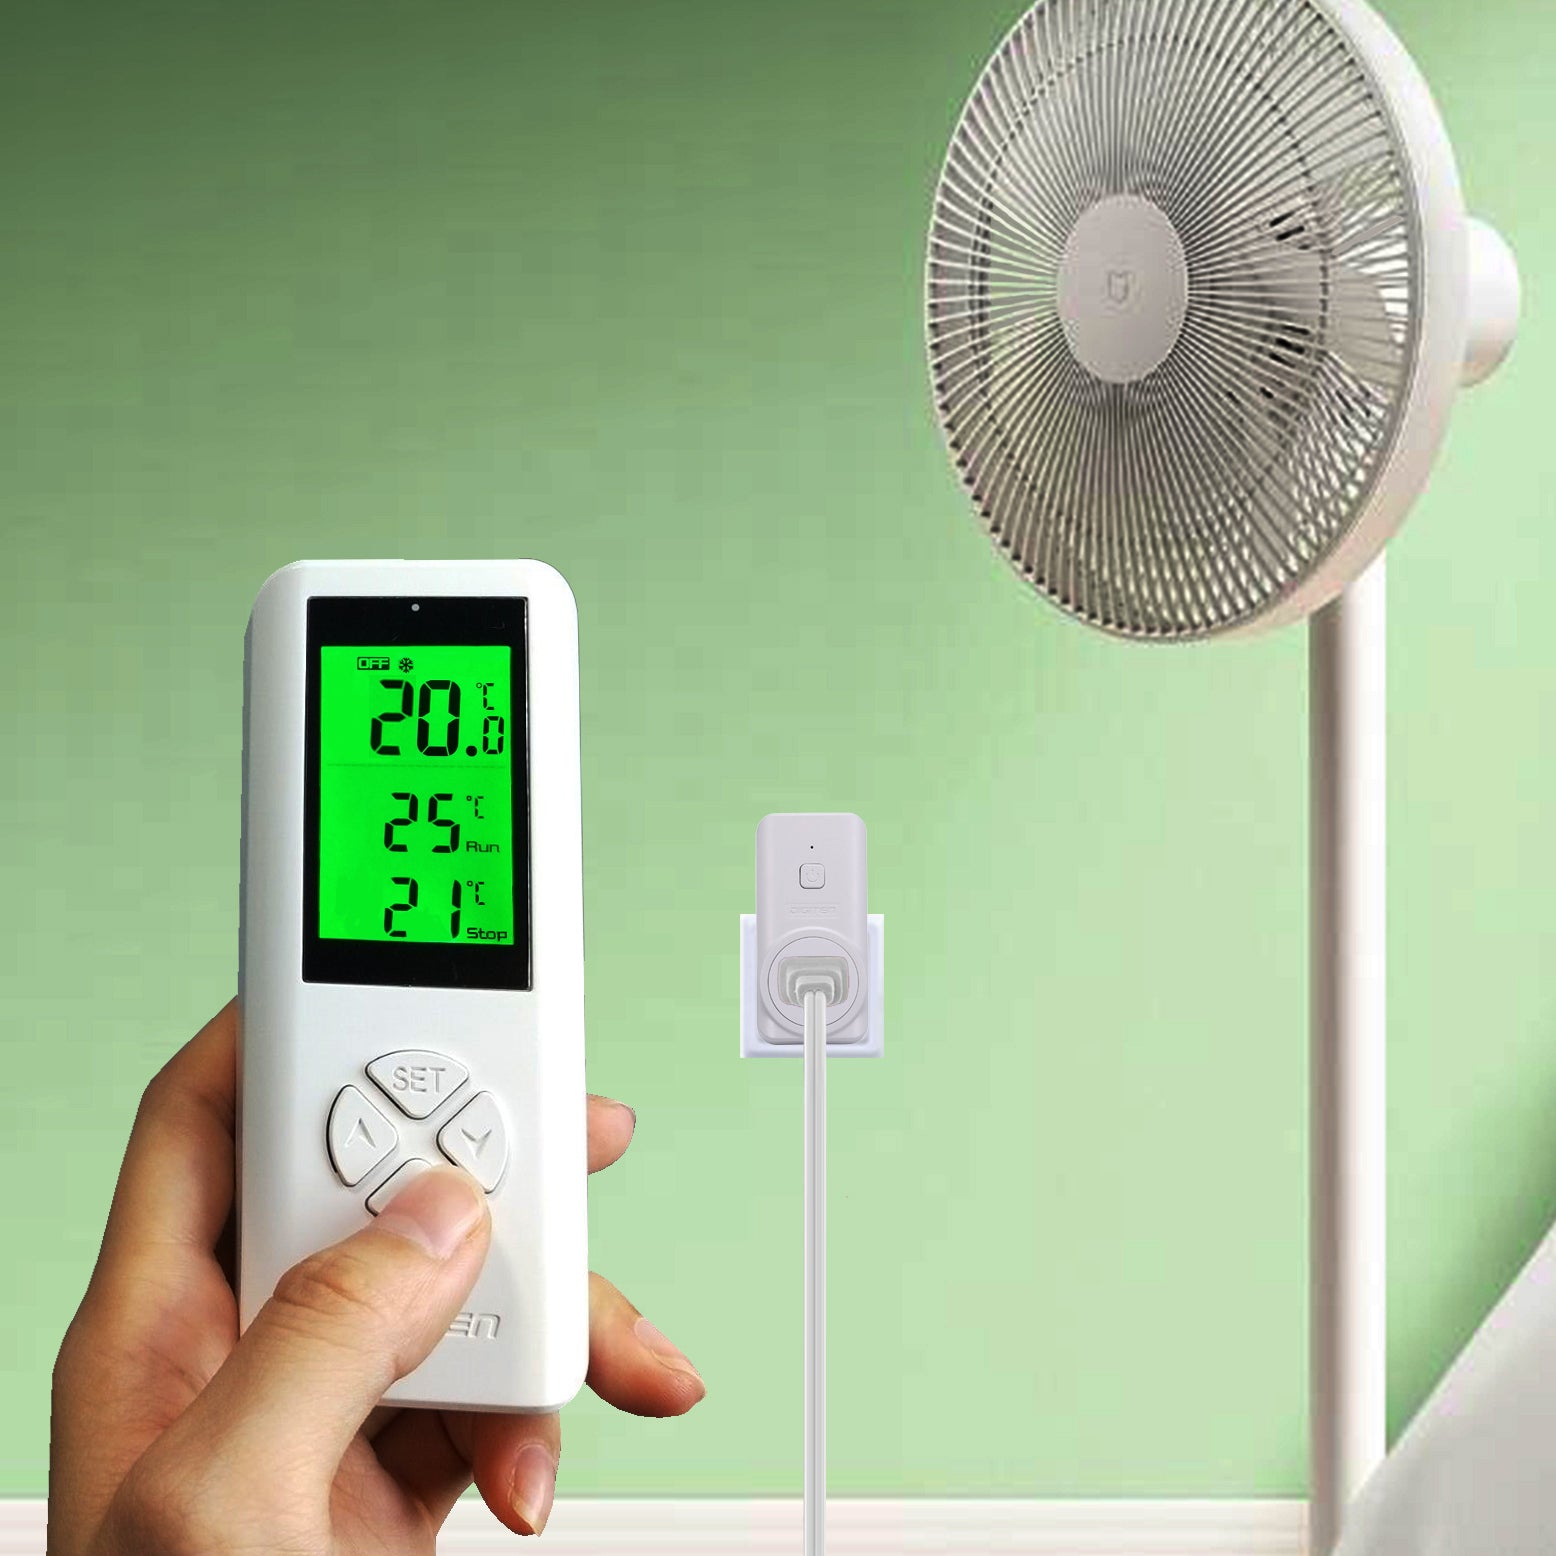 DIGITEN WTC100 Wireless Programmable Thermostat Plug-in Temperature Co